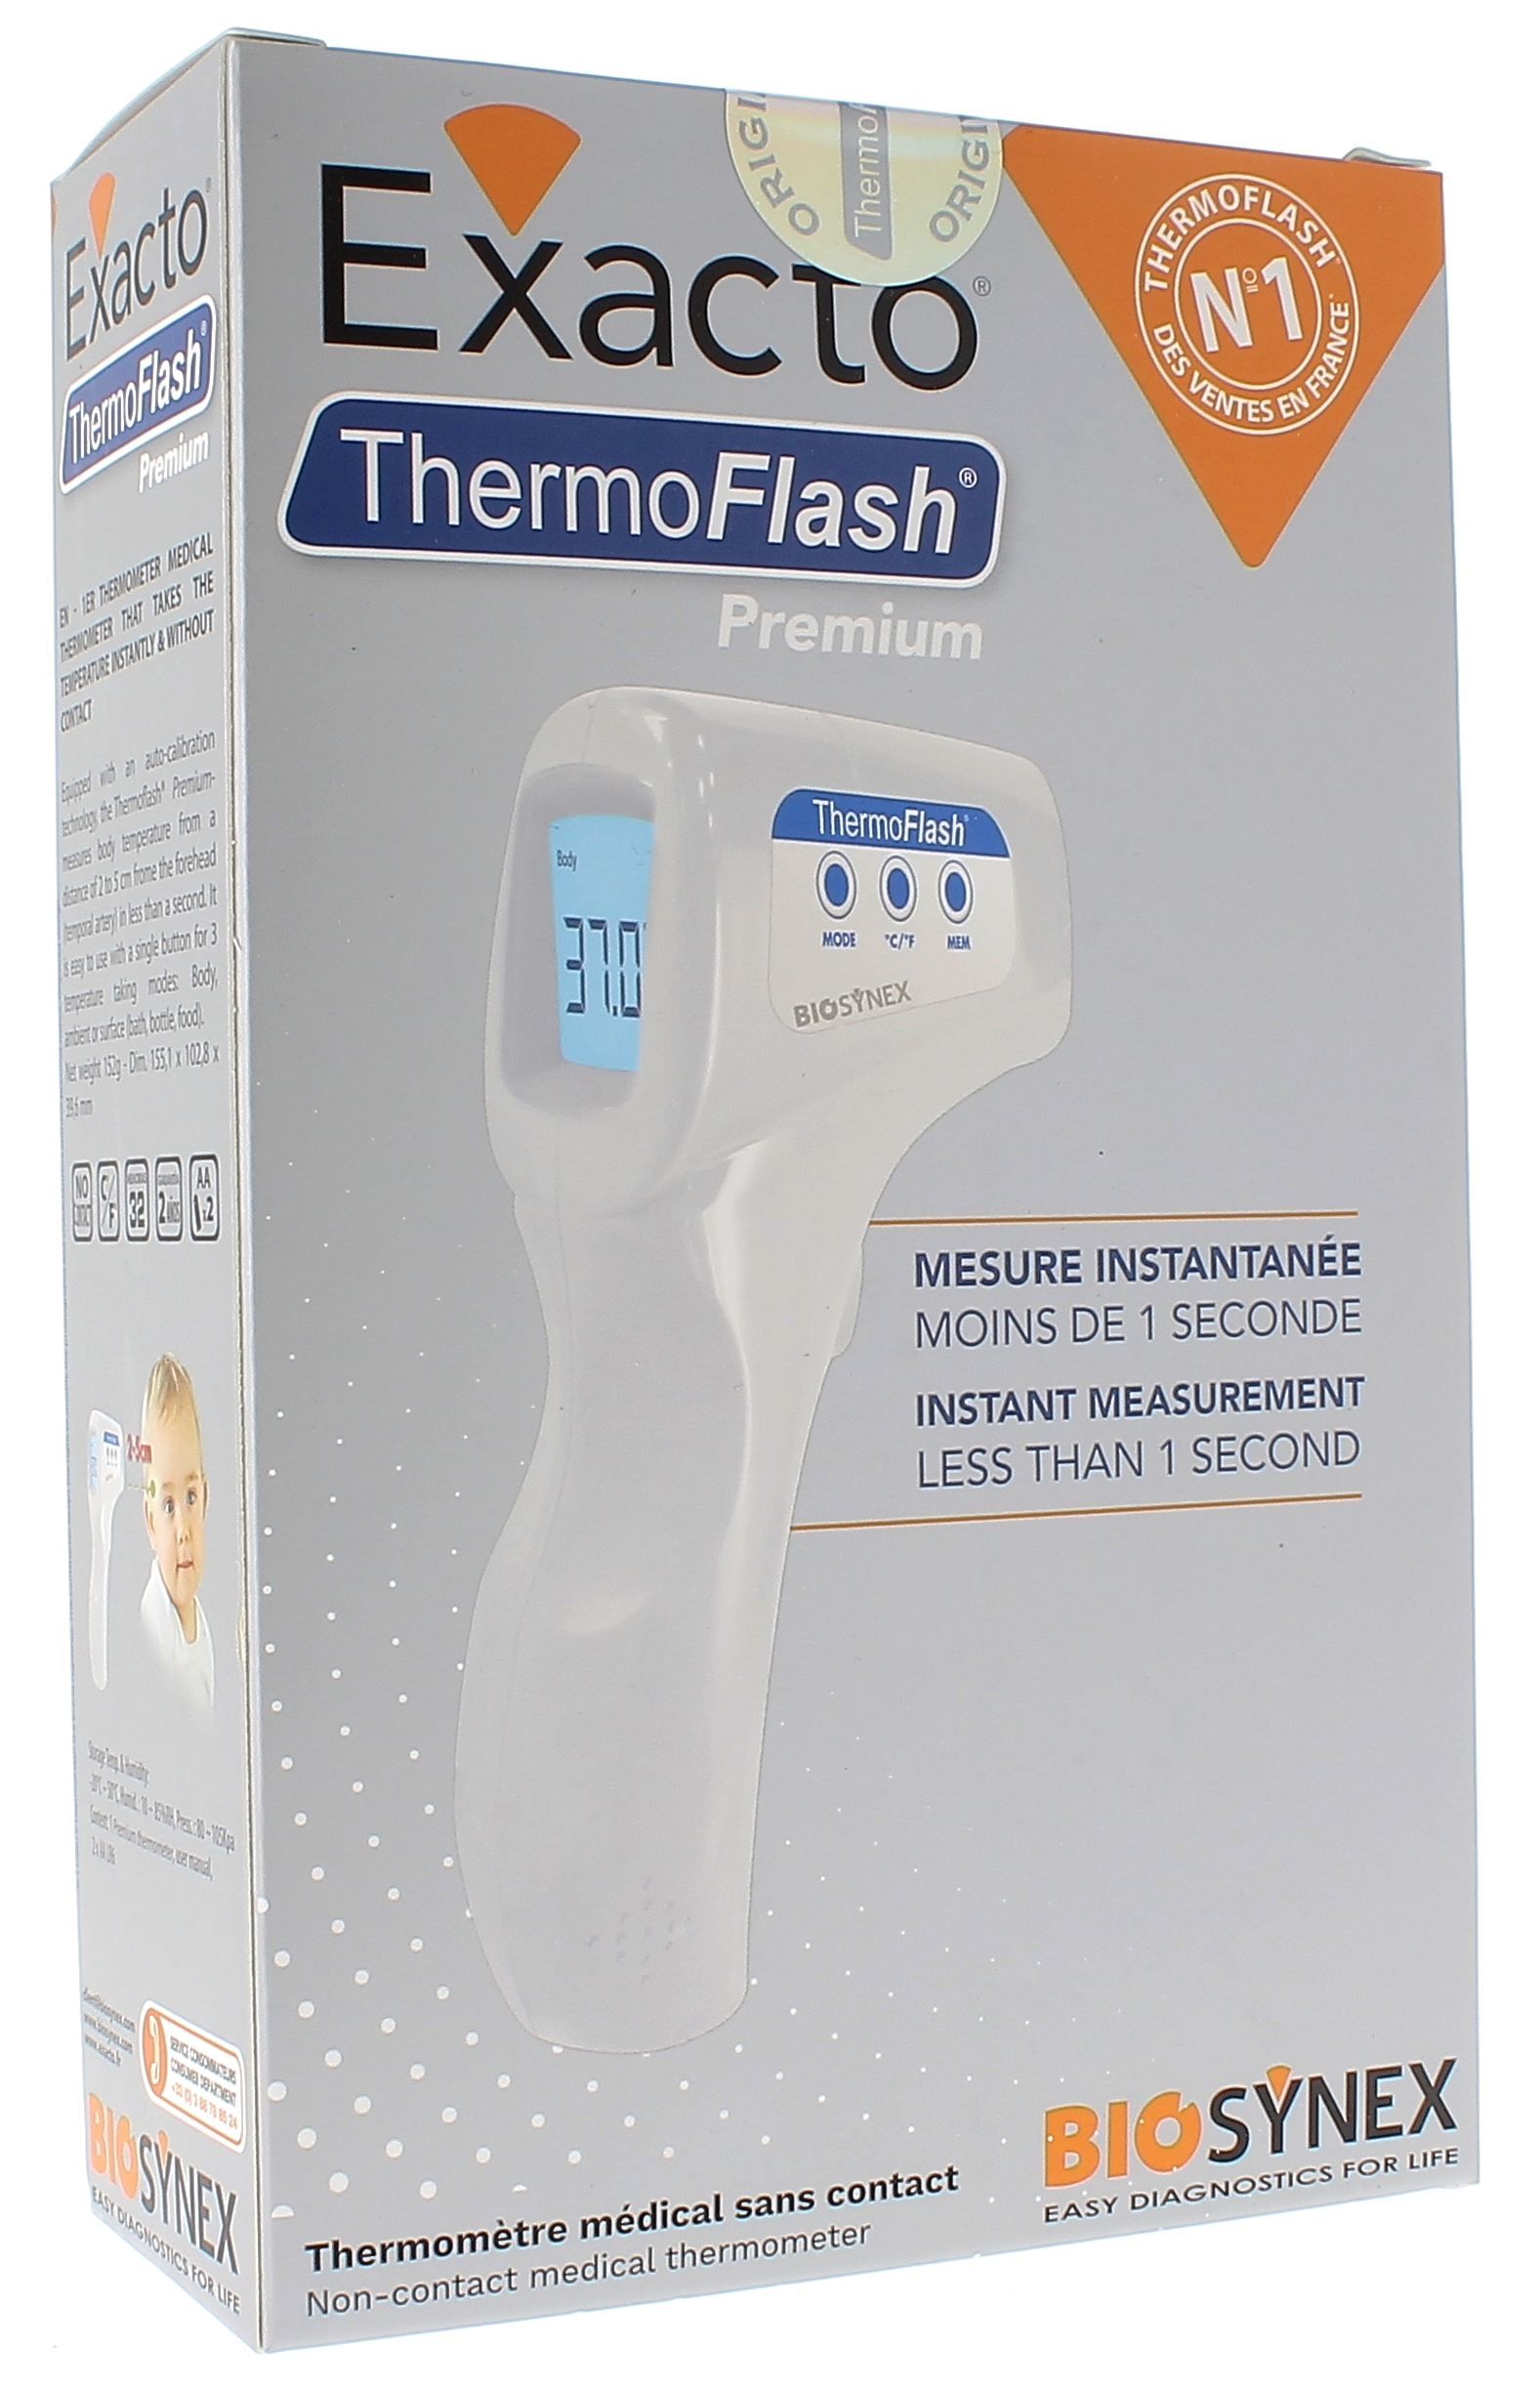 Thermometre medical: Achat pour une surveillance saine